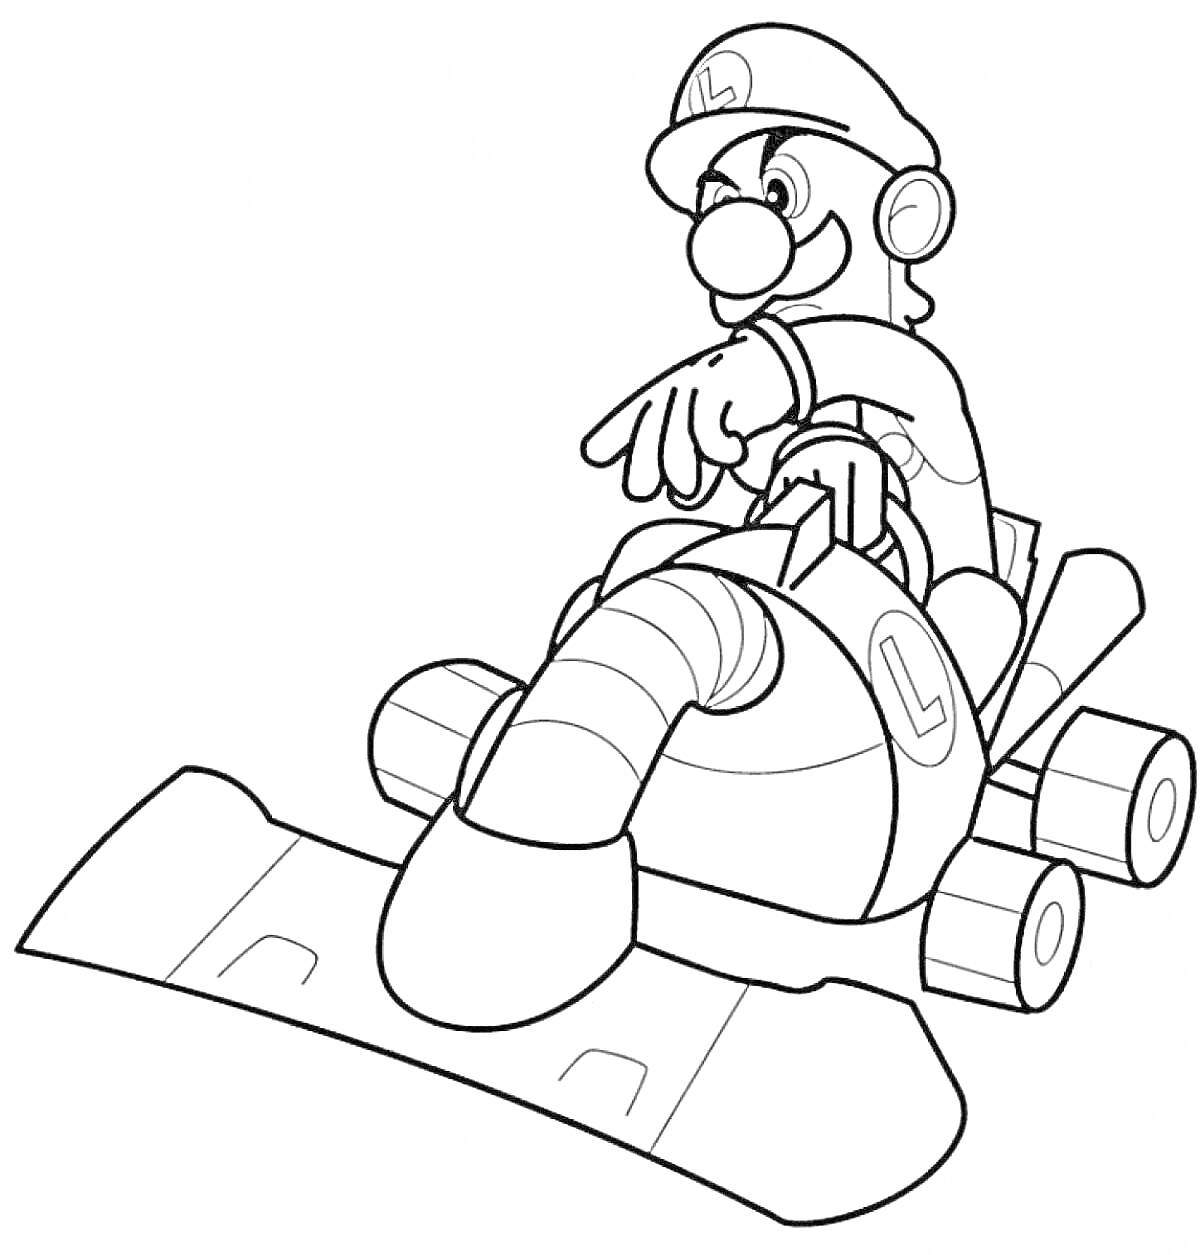 Раскраска Марио на гоночной машине из конструктора Лего